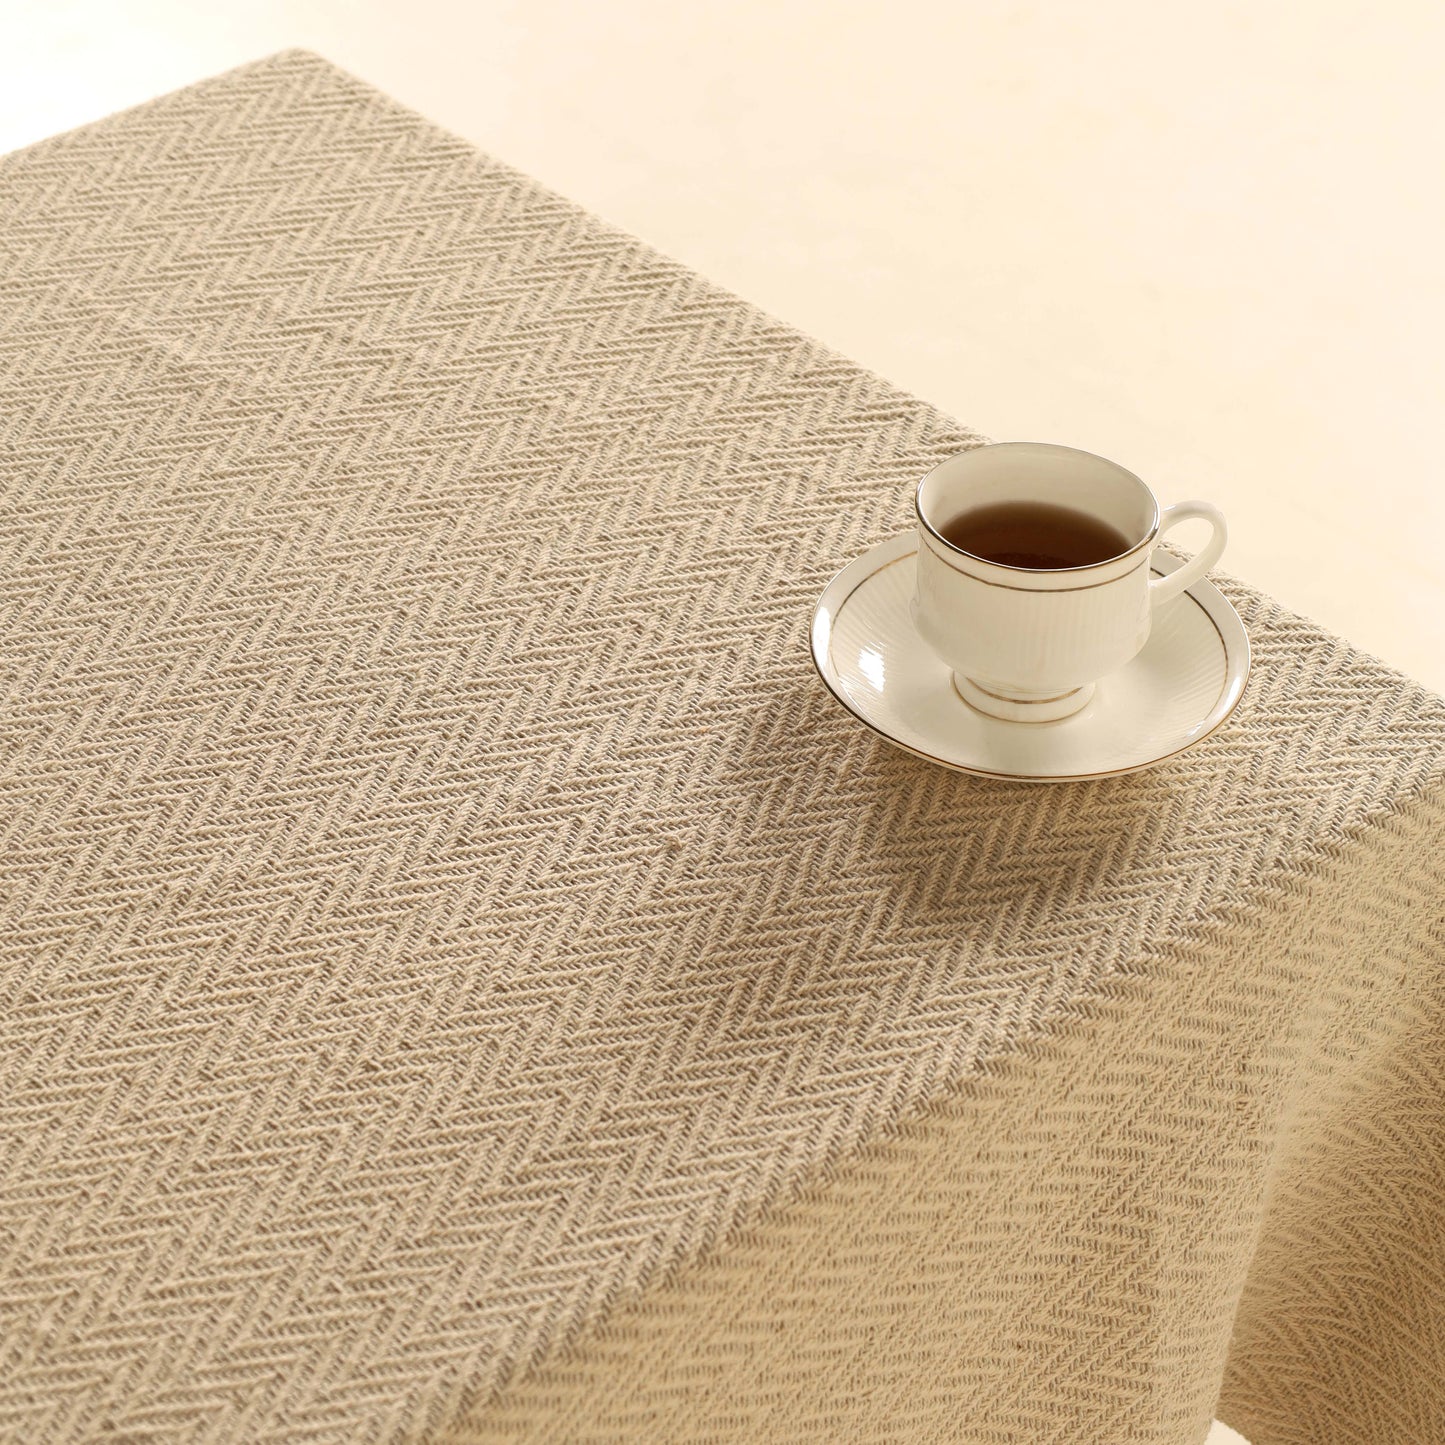 Gray Cotton Tablecloth